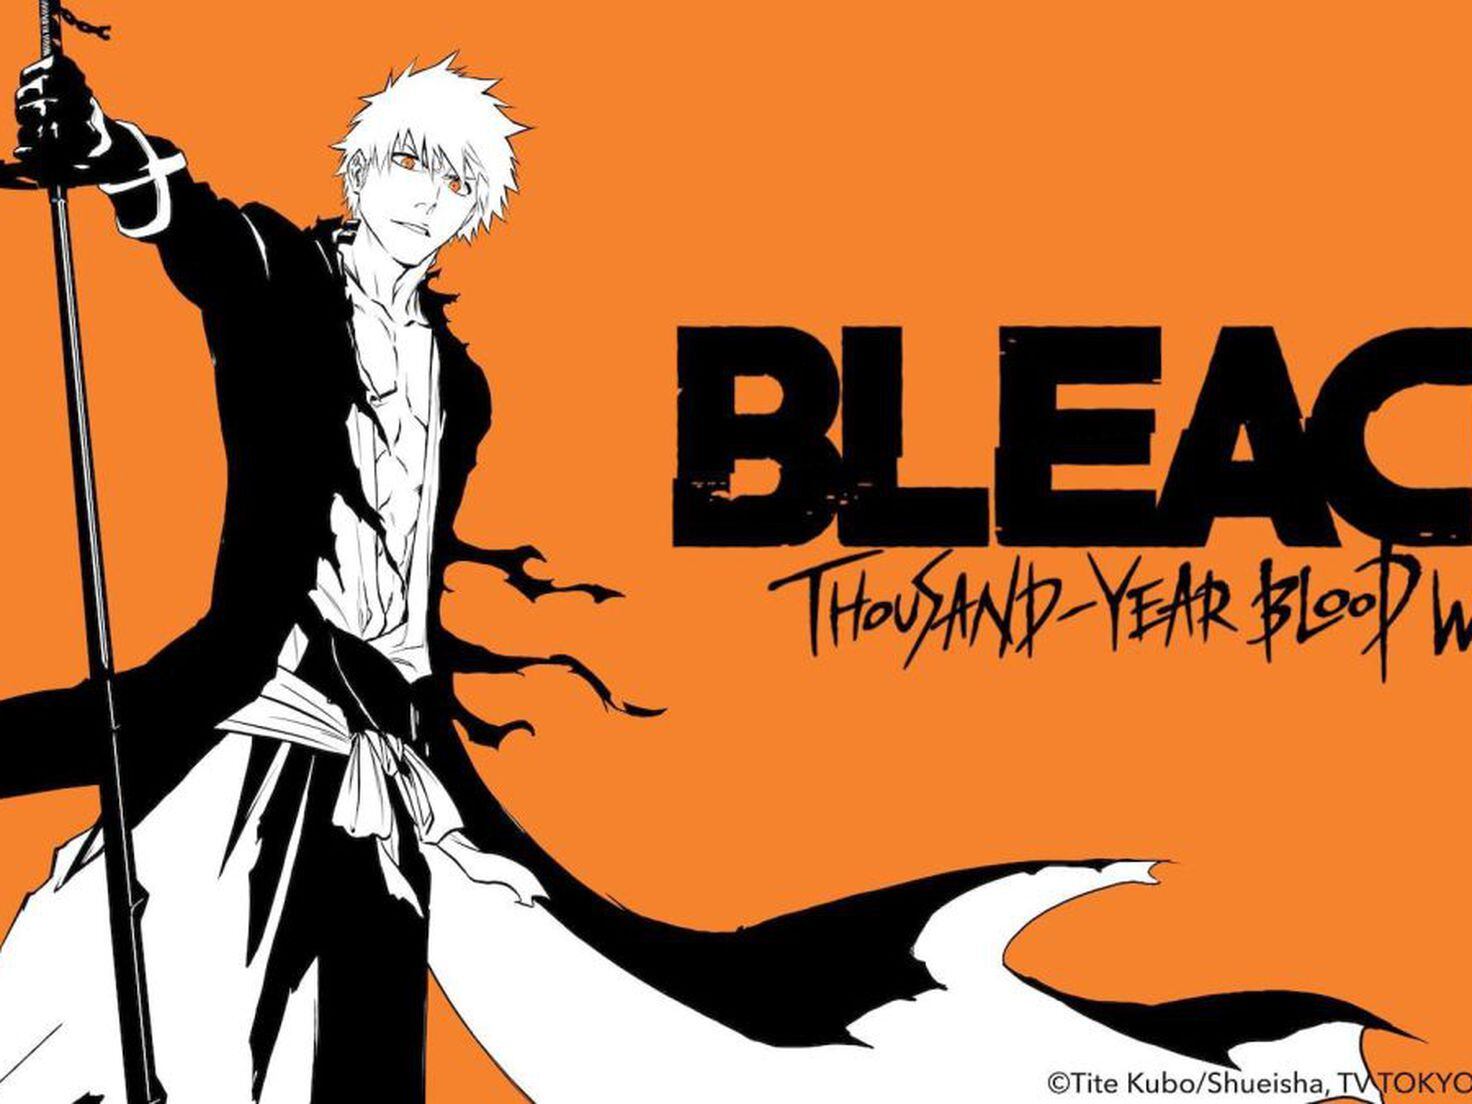 Bleach: Anime retorna após uma década sem lançamentos